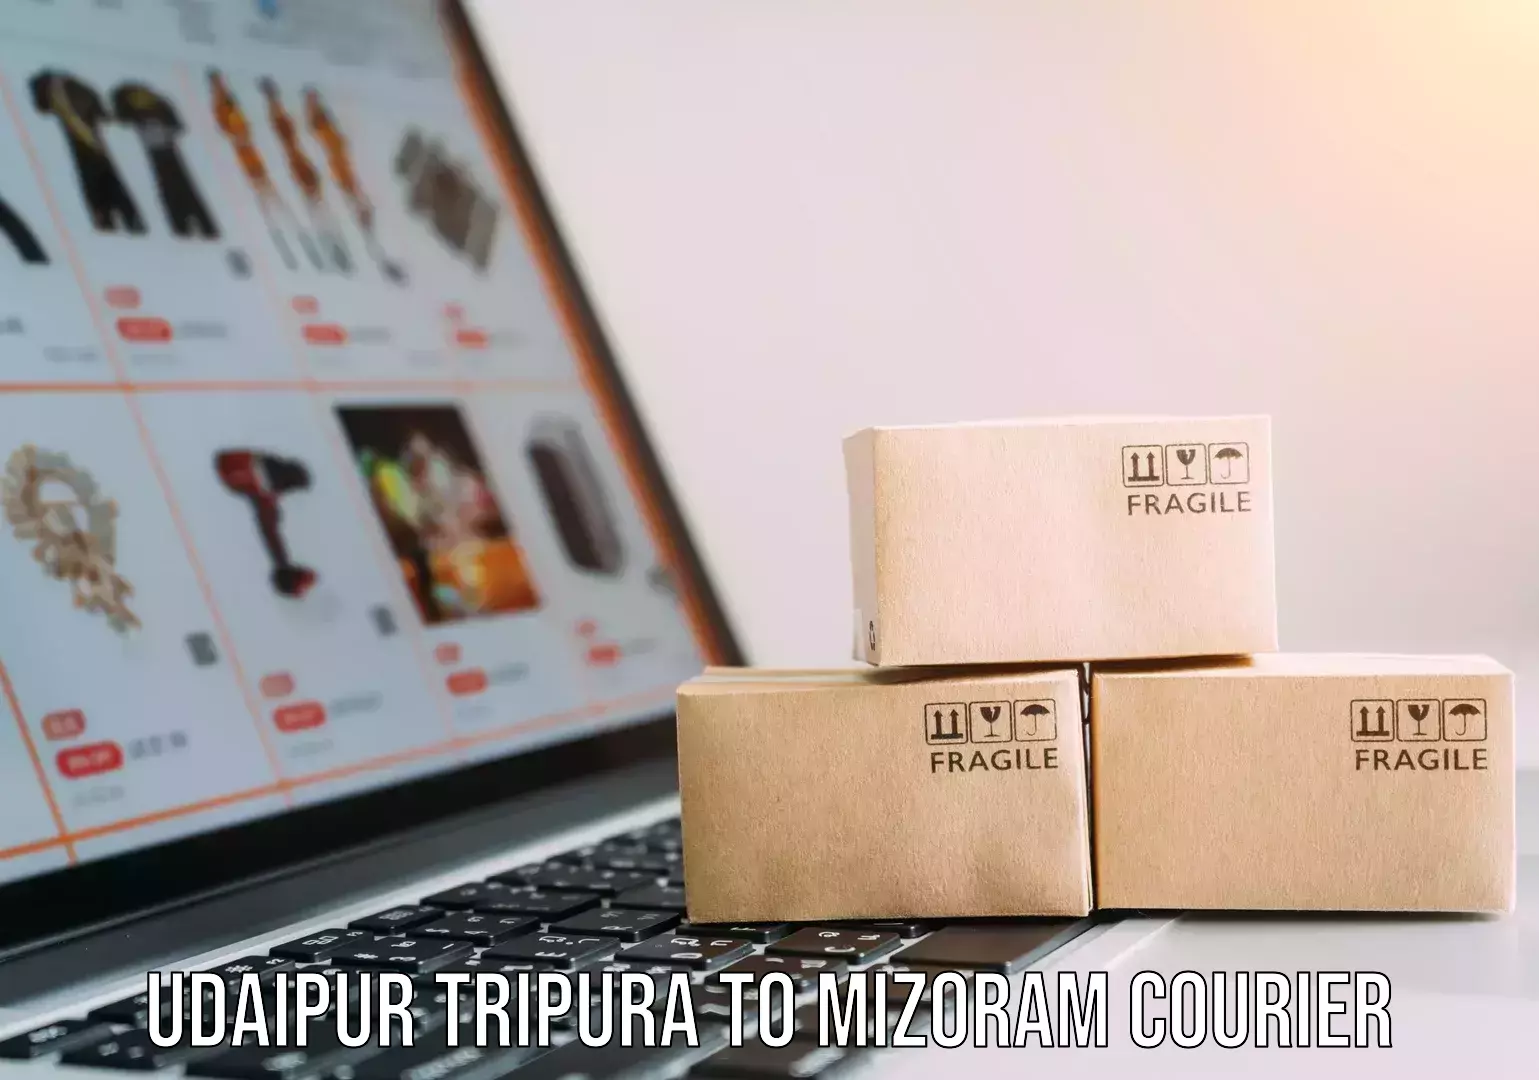 Efficient order fulfillment Udaipur Tripura to Mizoram